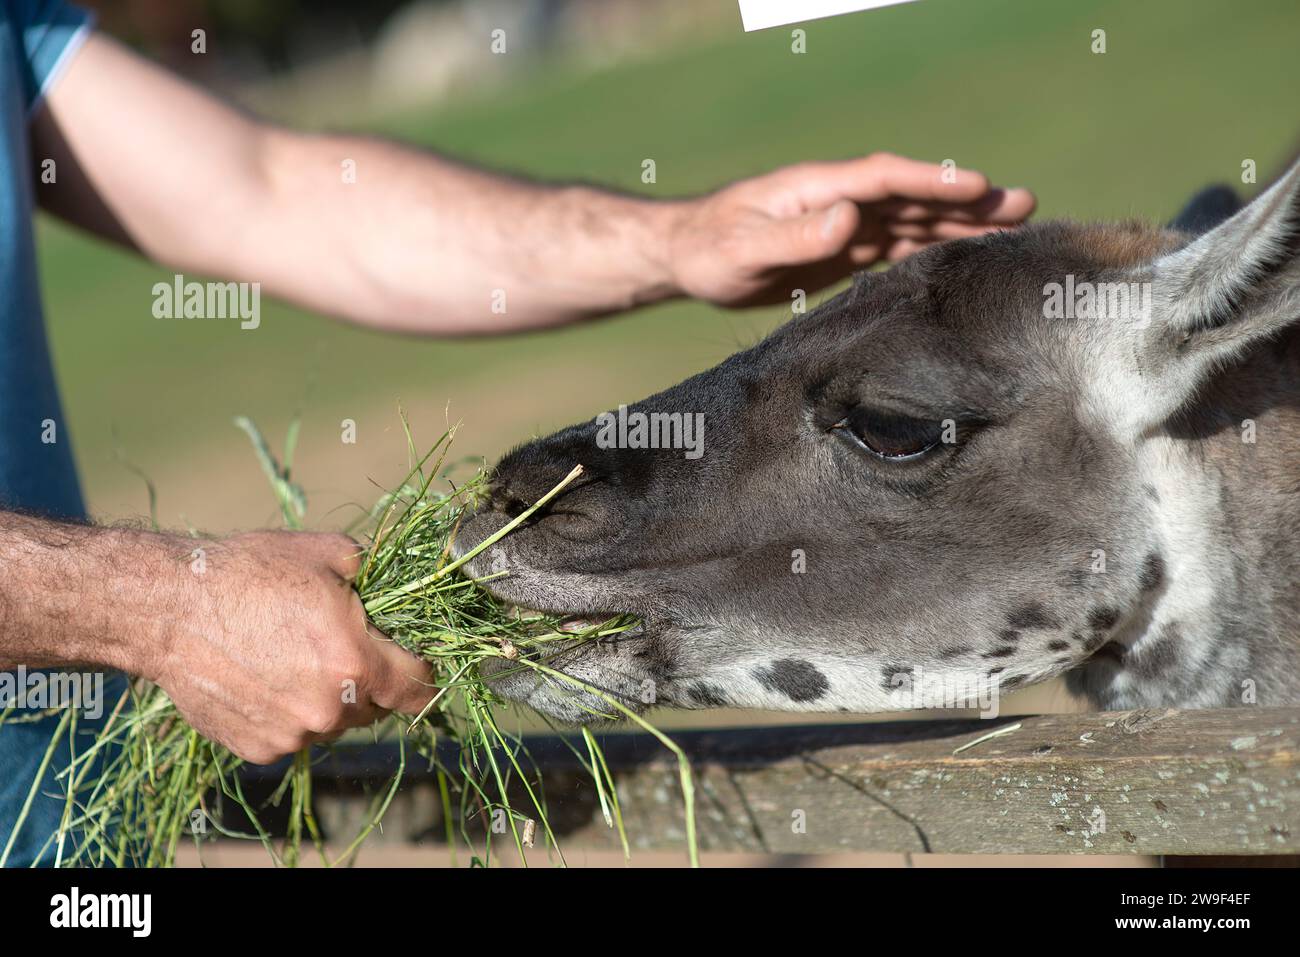 Un homme avec une expression douce nourrit à la main un bébé âne avec une poignée d'herbe verte fraîche dans sa bouche Banque D'Images